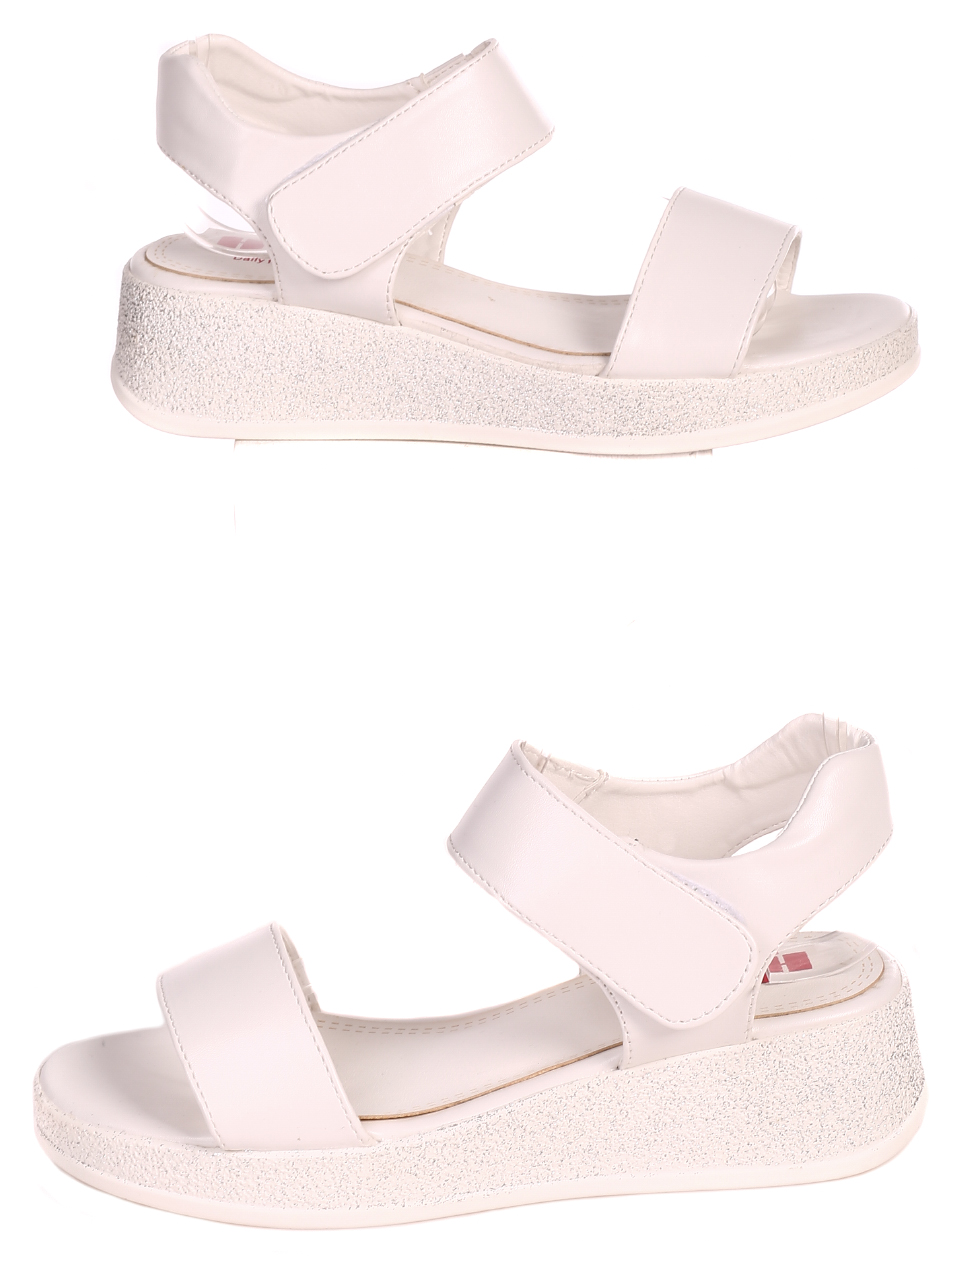 Ежедневни дамски сандали в бяло 4P-21090 white